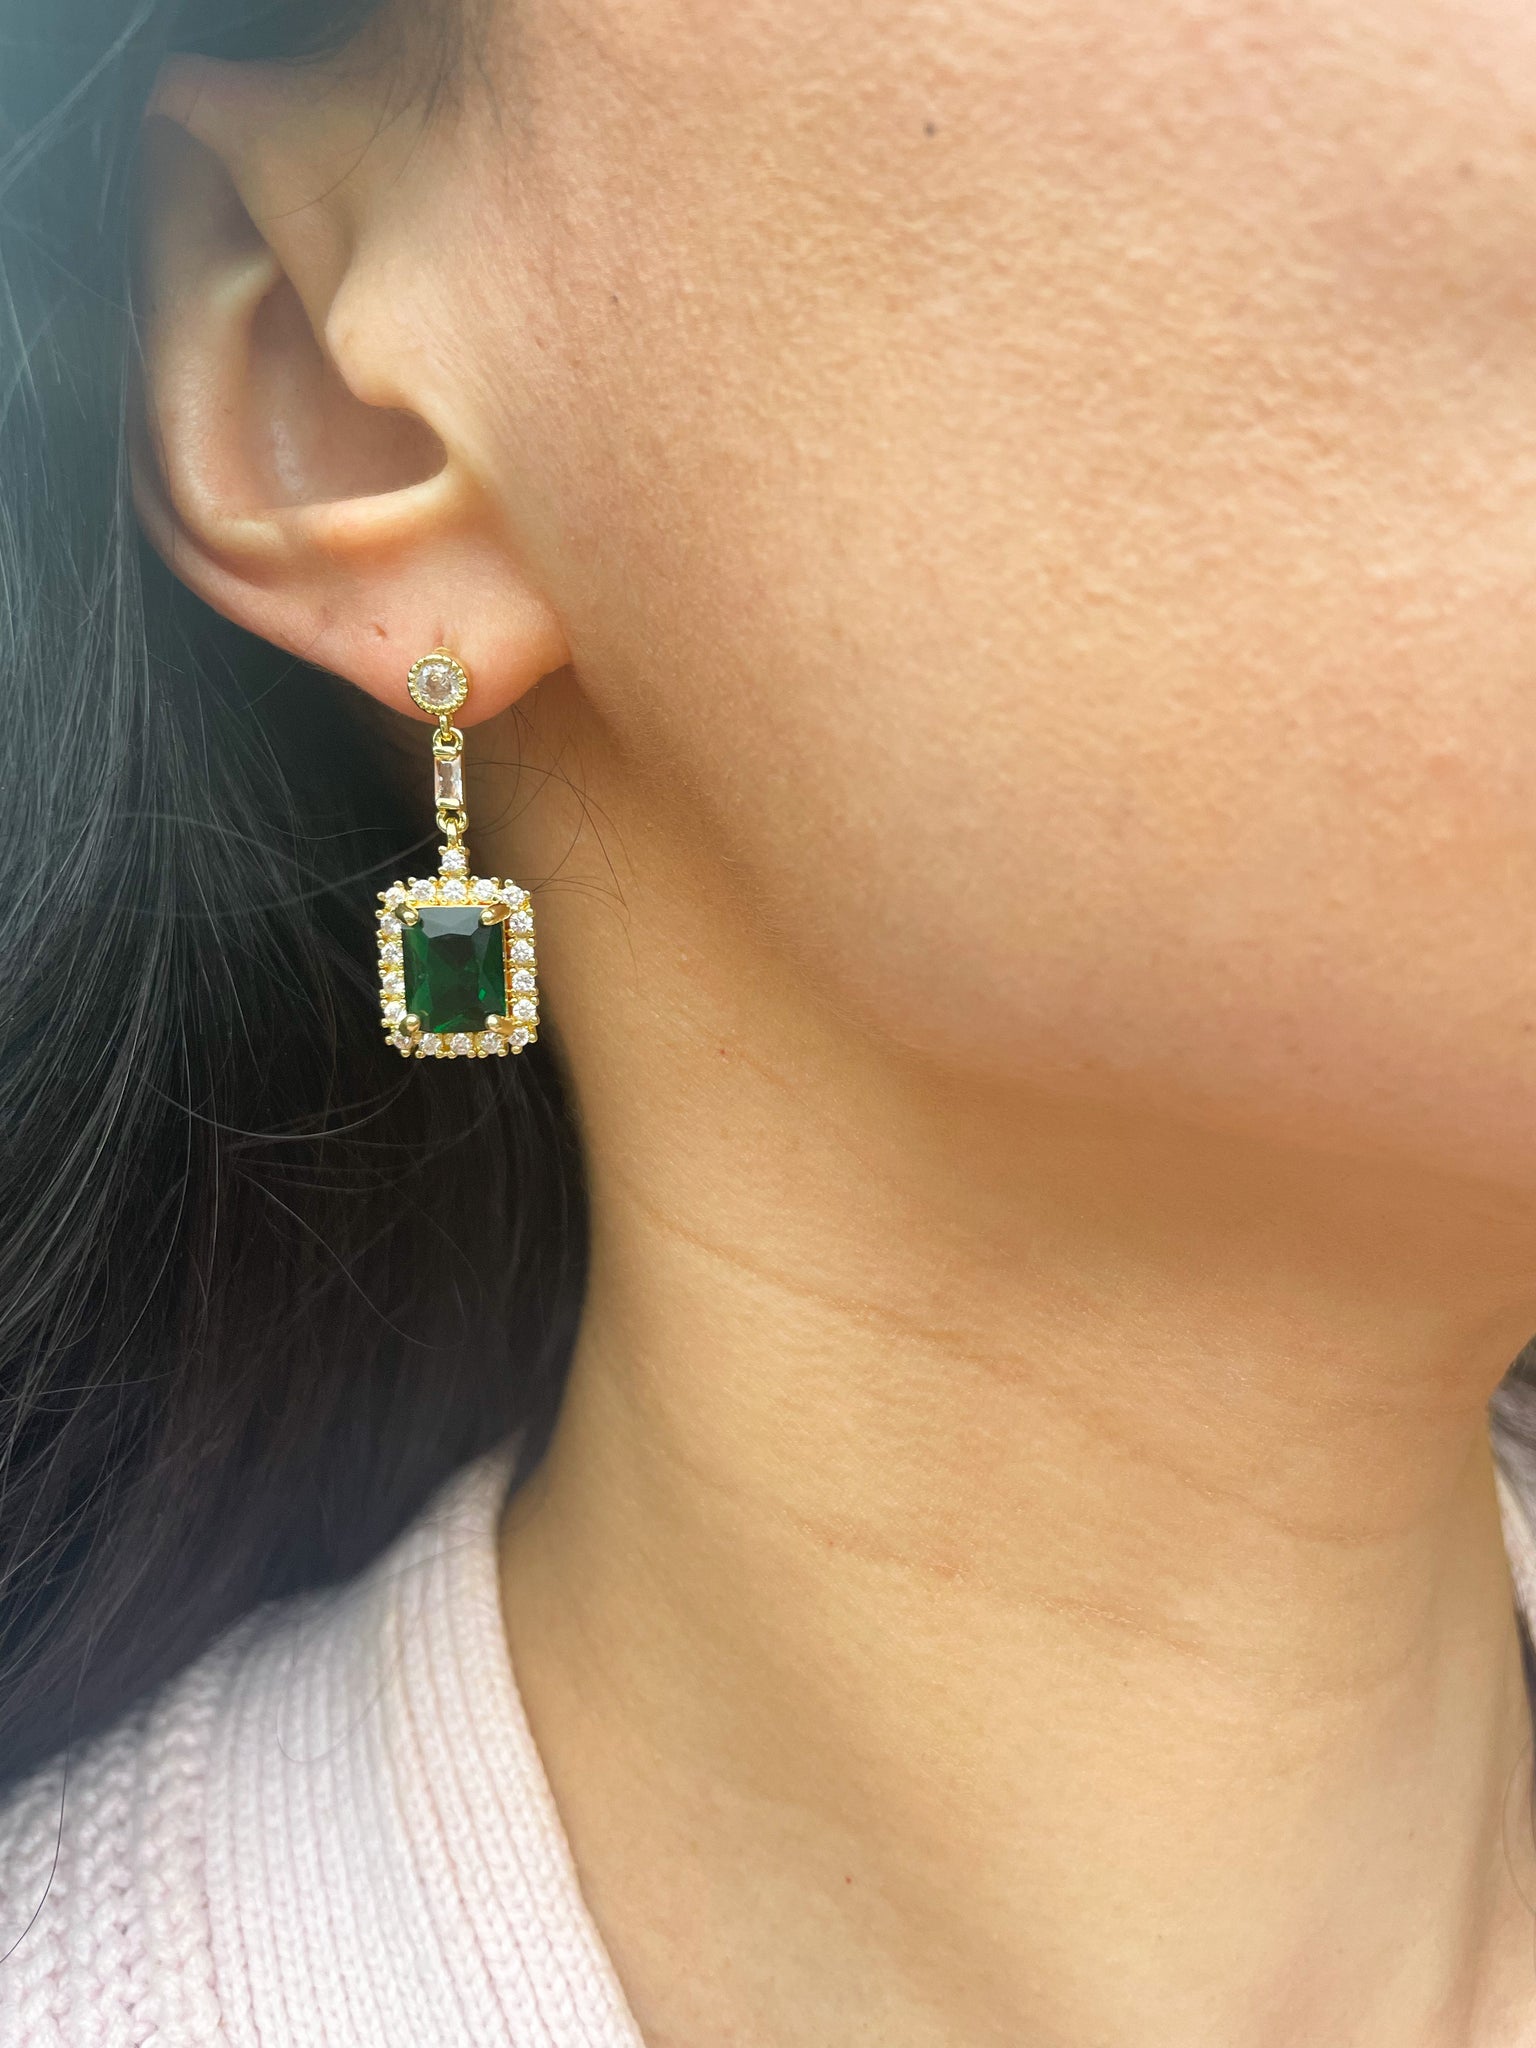 Isle Earrings - emerald earrings with green gemstone drops – Foamy Wader